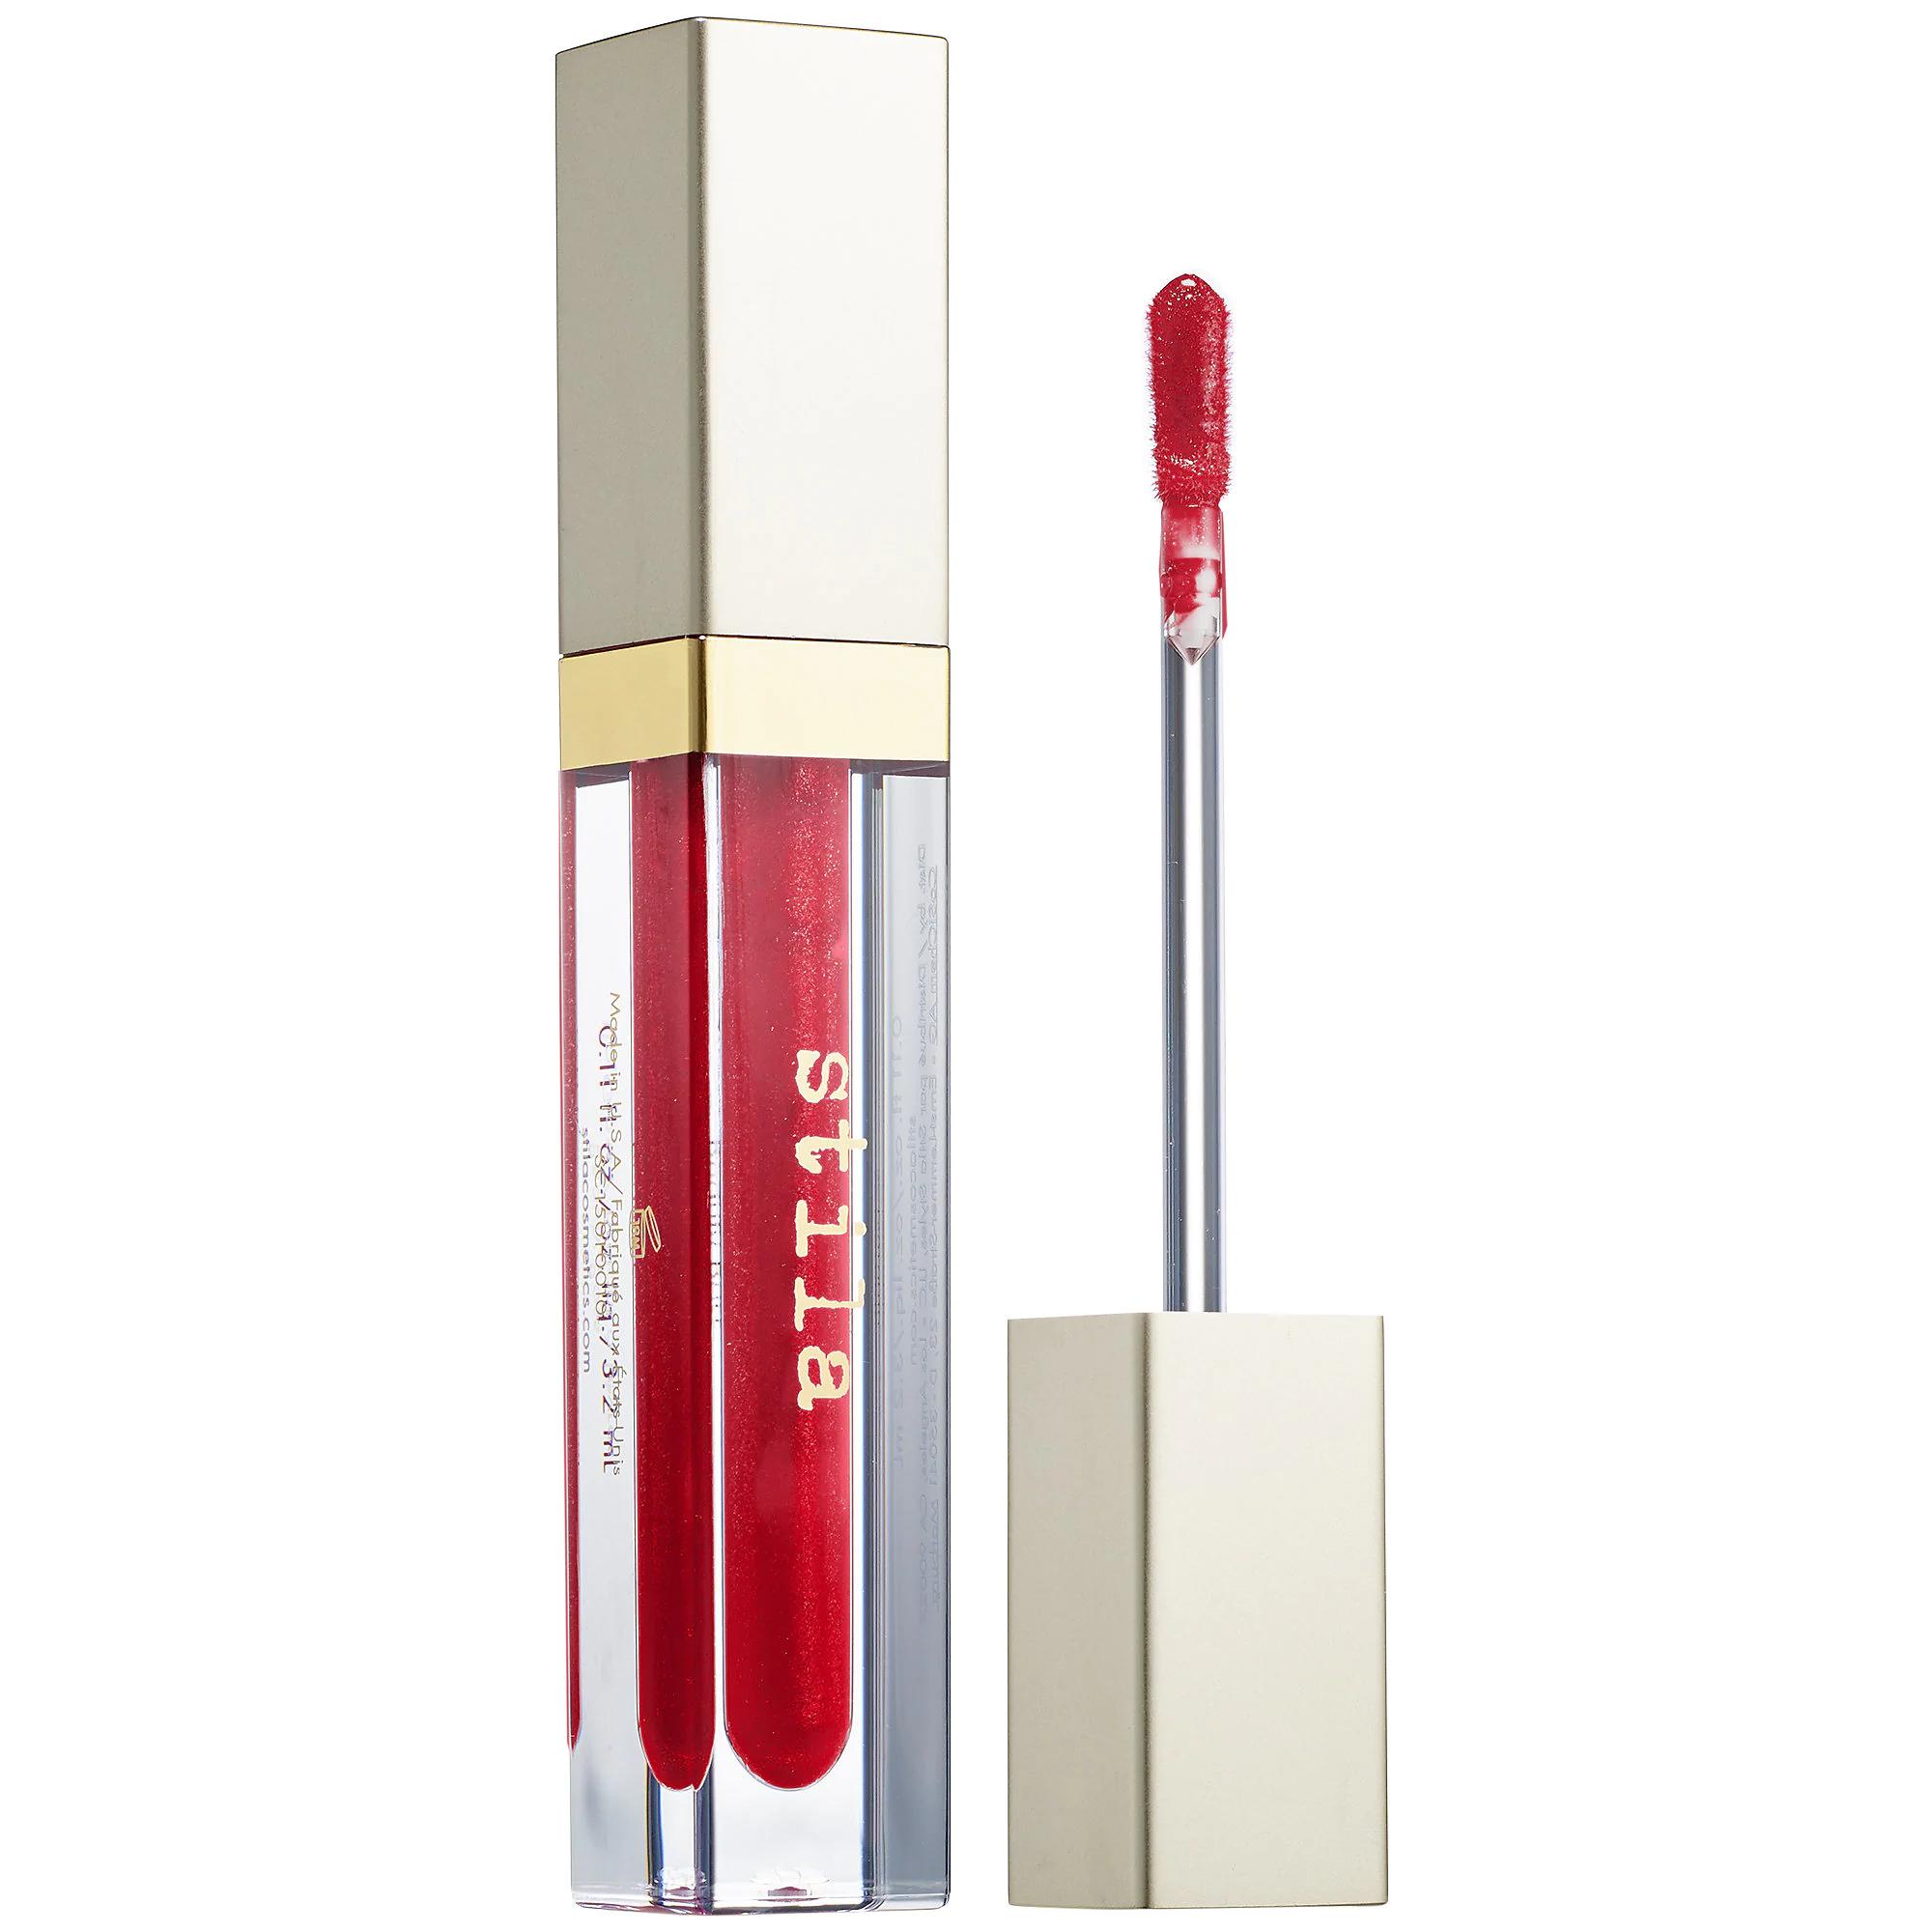 Stila Beauty Boss Lip Gloss In The Red